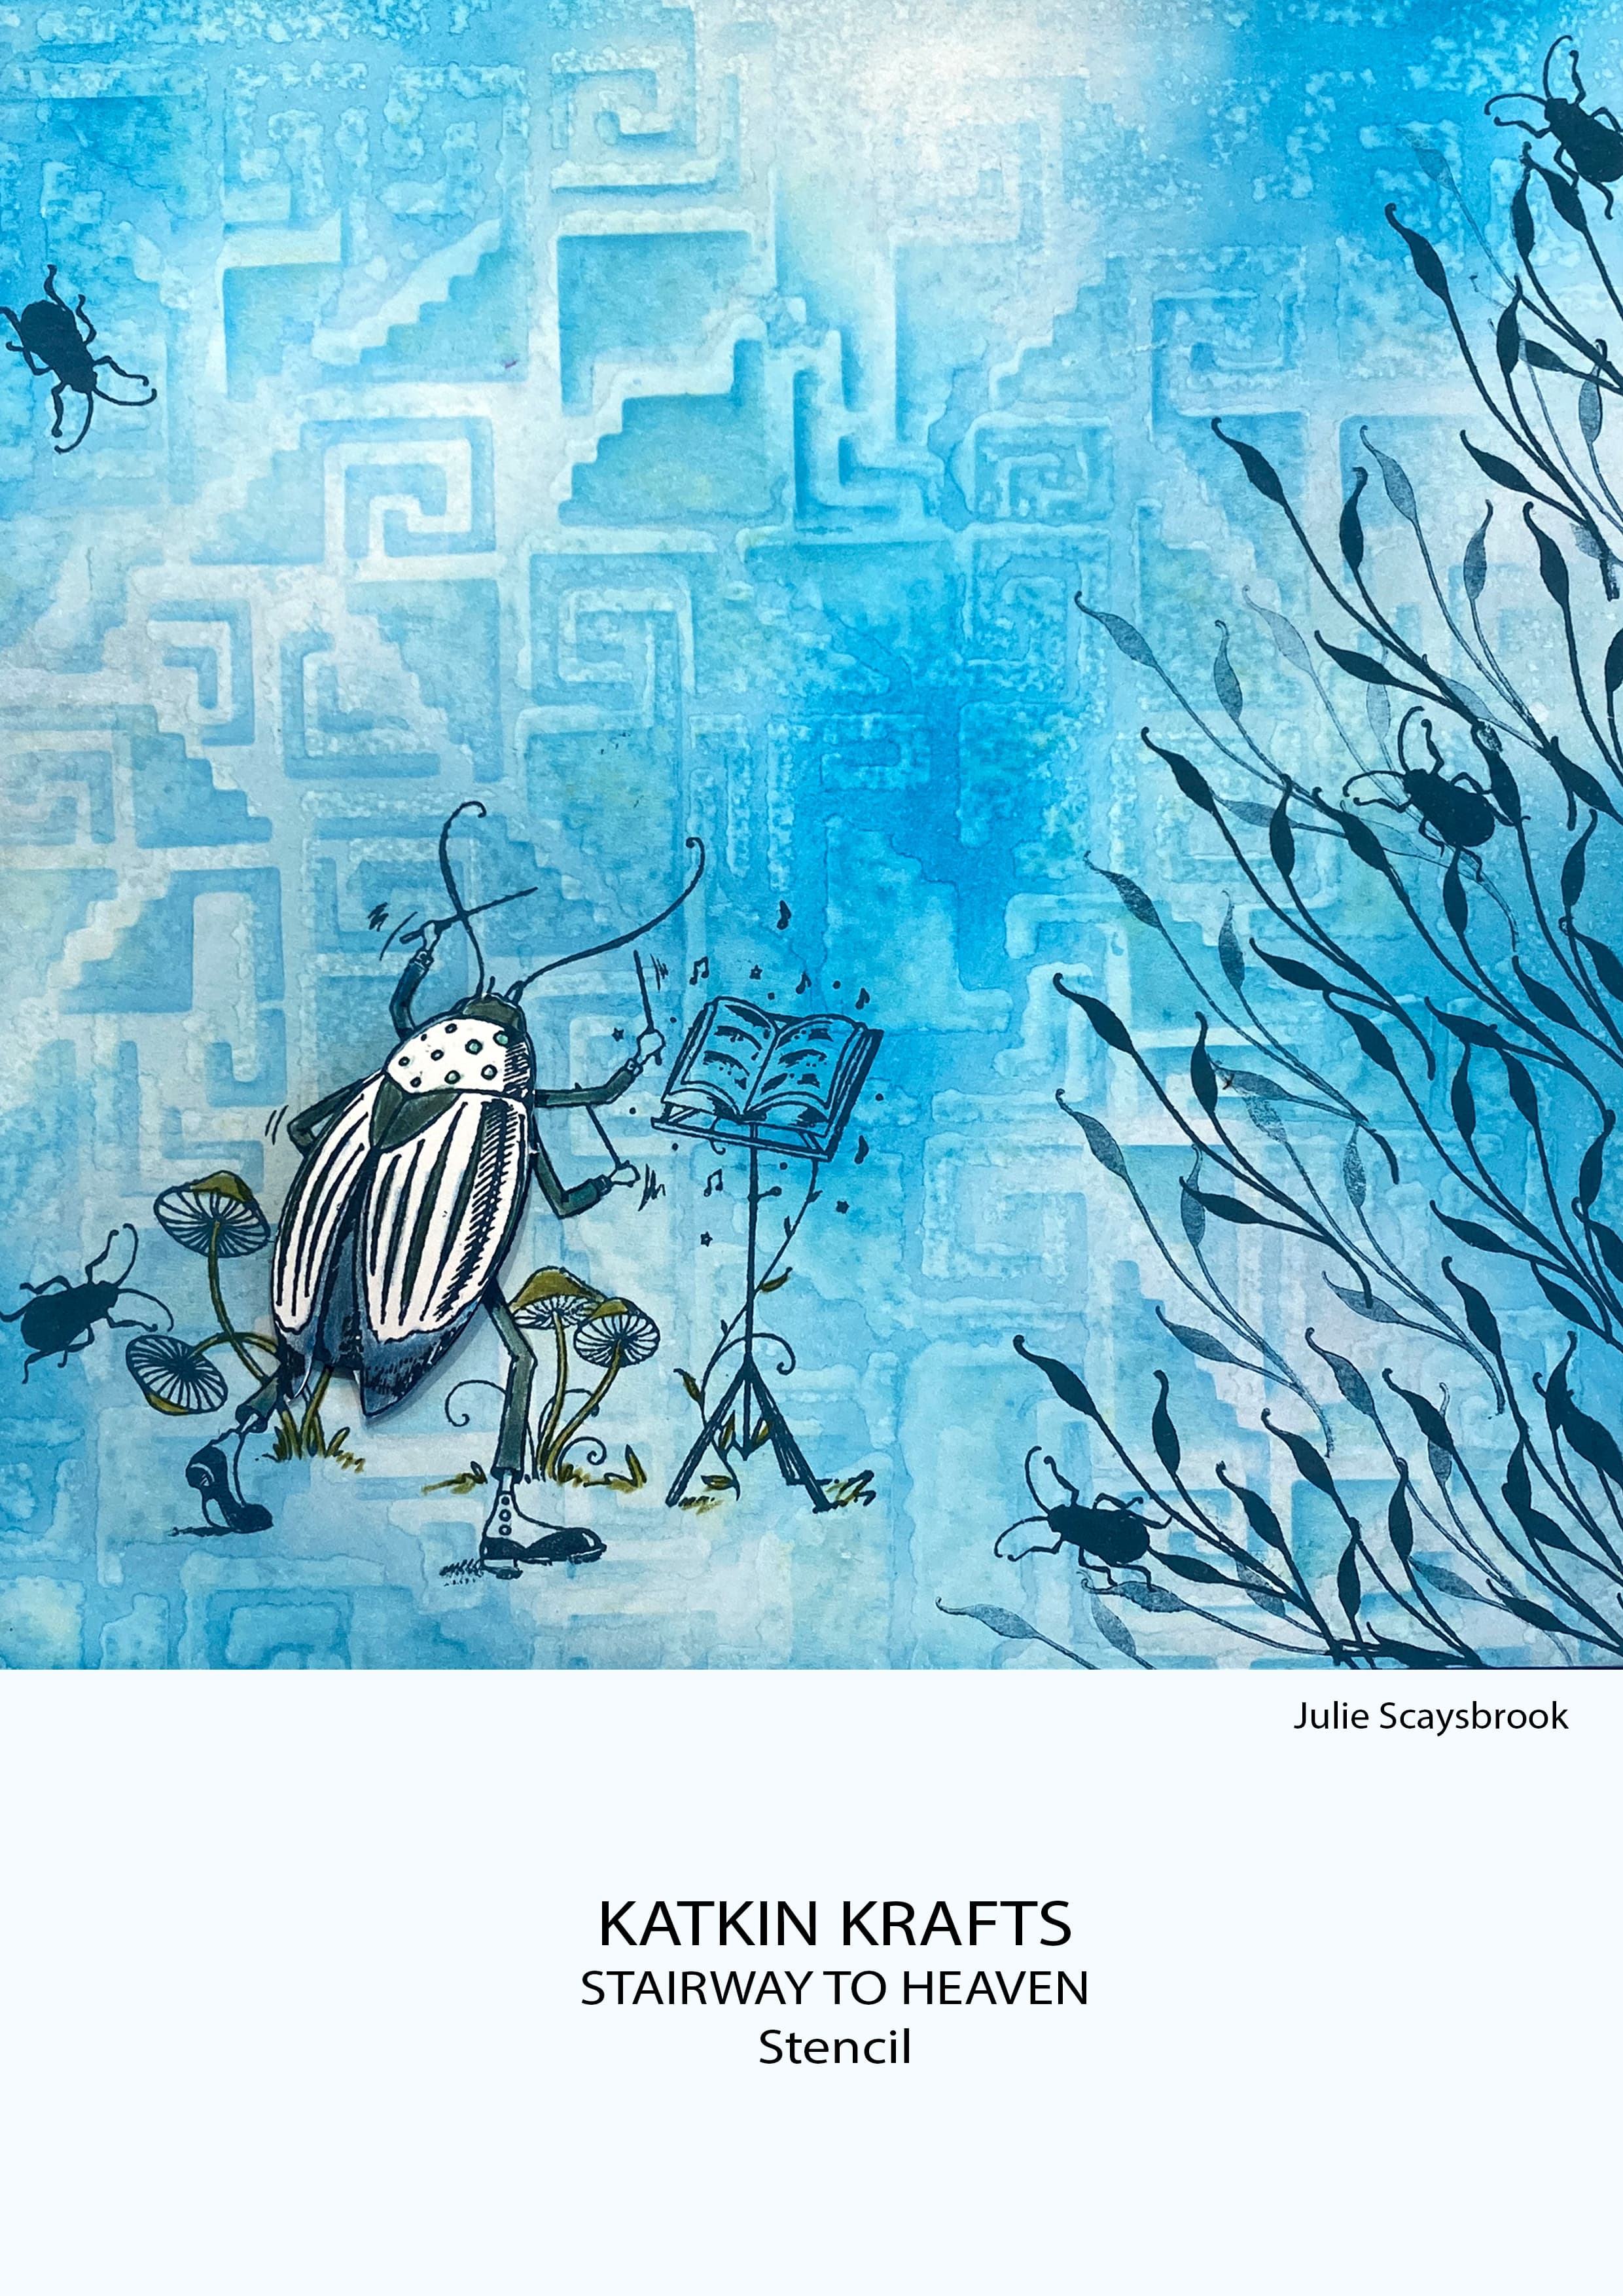 Katkin Krafts Stairway To Heaven 7 in x 7 in Stencil